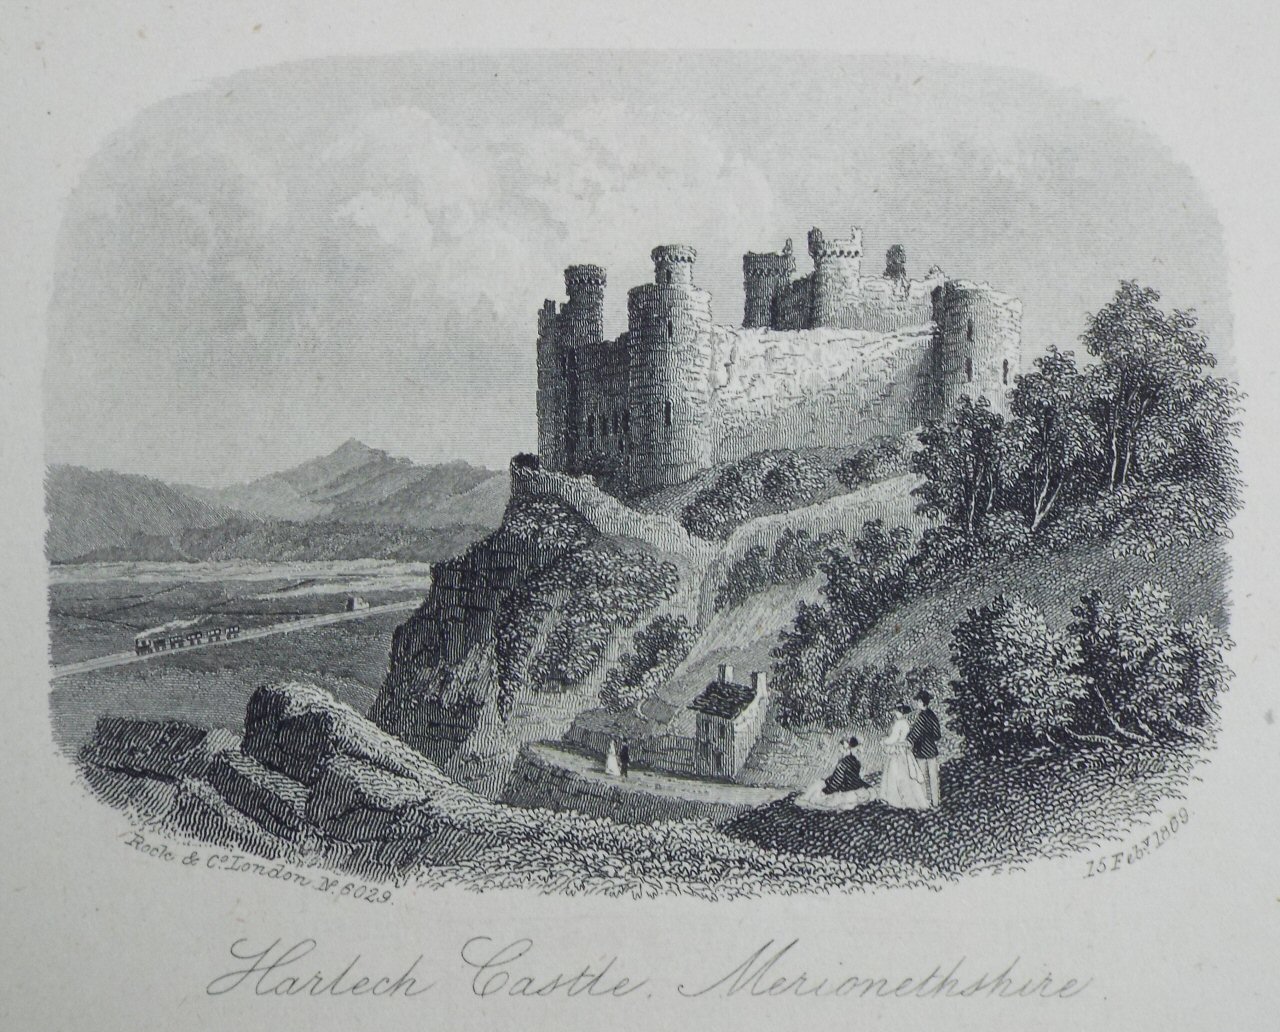 Steel Vignette - Harlech Castle, Merionethshire. - Rock